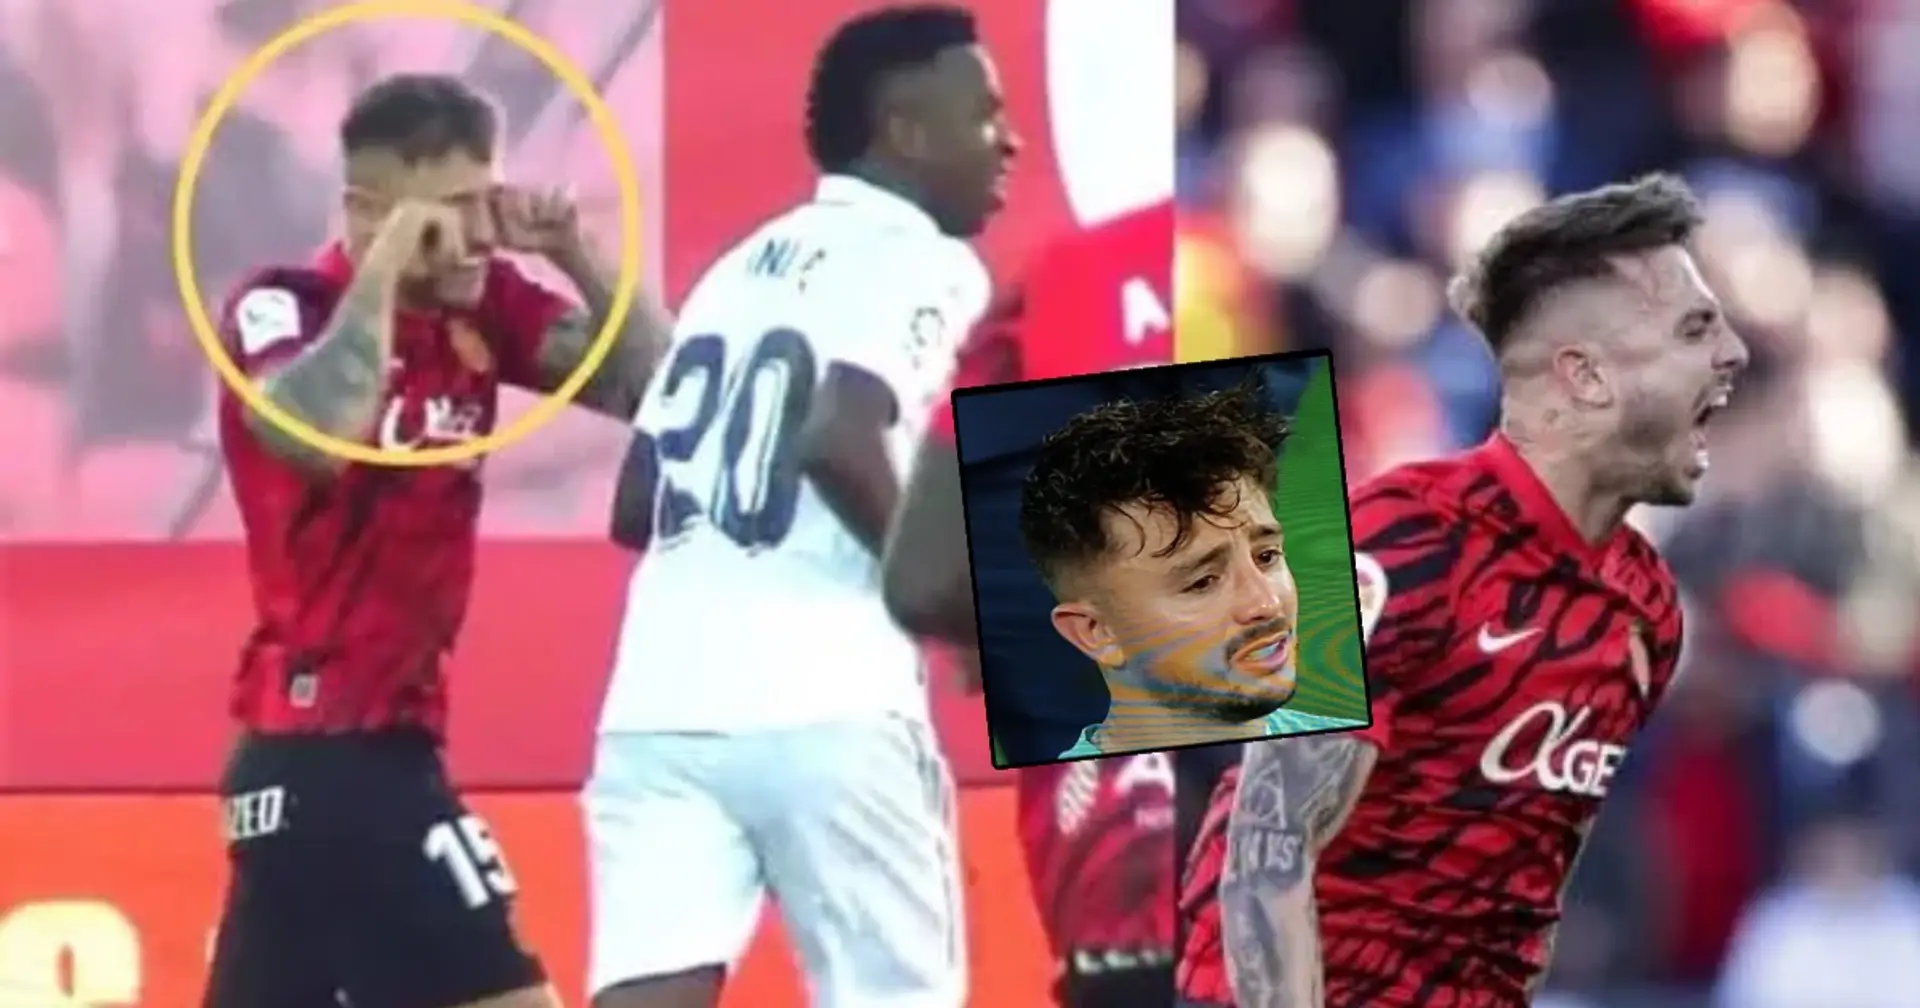 Les supporters du Real Madrid trollent un joueur de Majorque après la défaite en Copa del Rey – qu'a-t-il fait ?